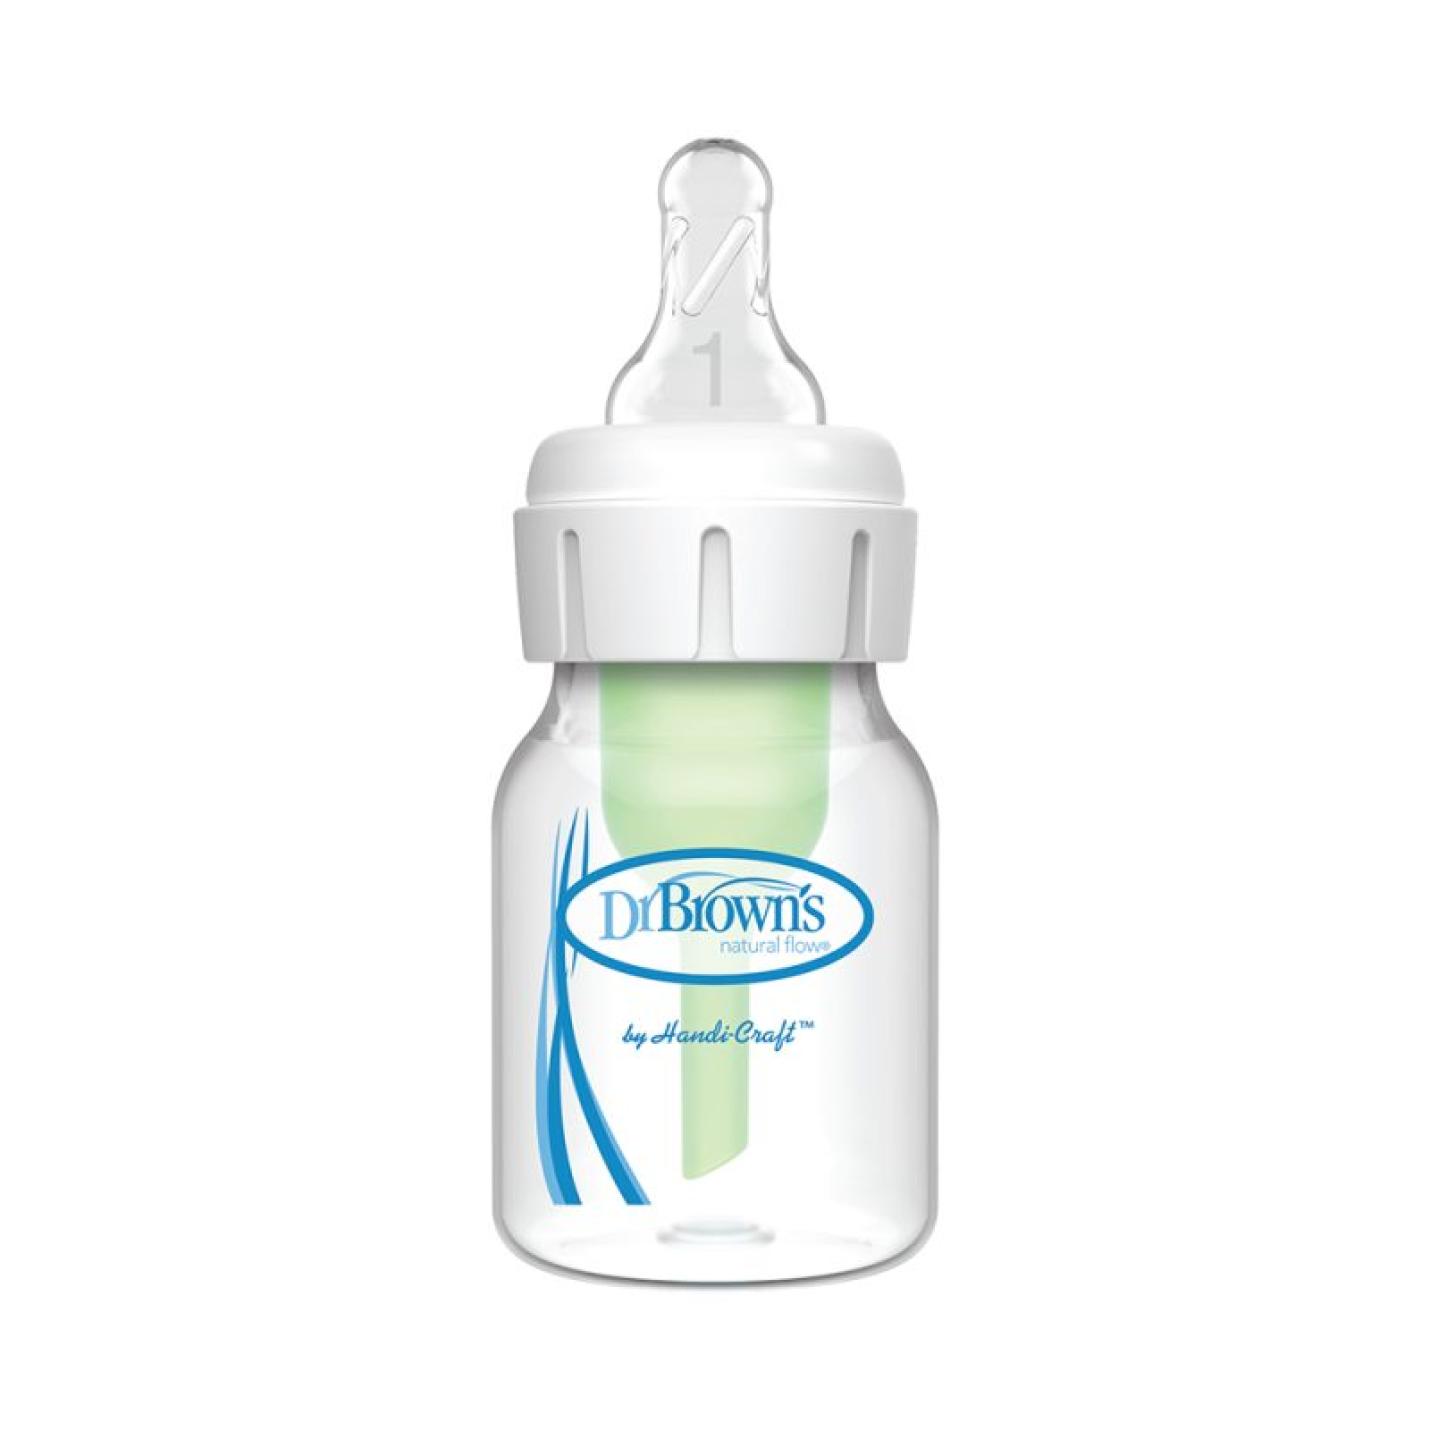 Smalle Halsfles 60ml is een transparante smalle baby fles met blauw logo van Dr.Brown's en groen ventiel/pijpje in de fles inclusief transparante speen in witte ring op hals fles